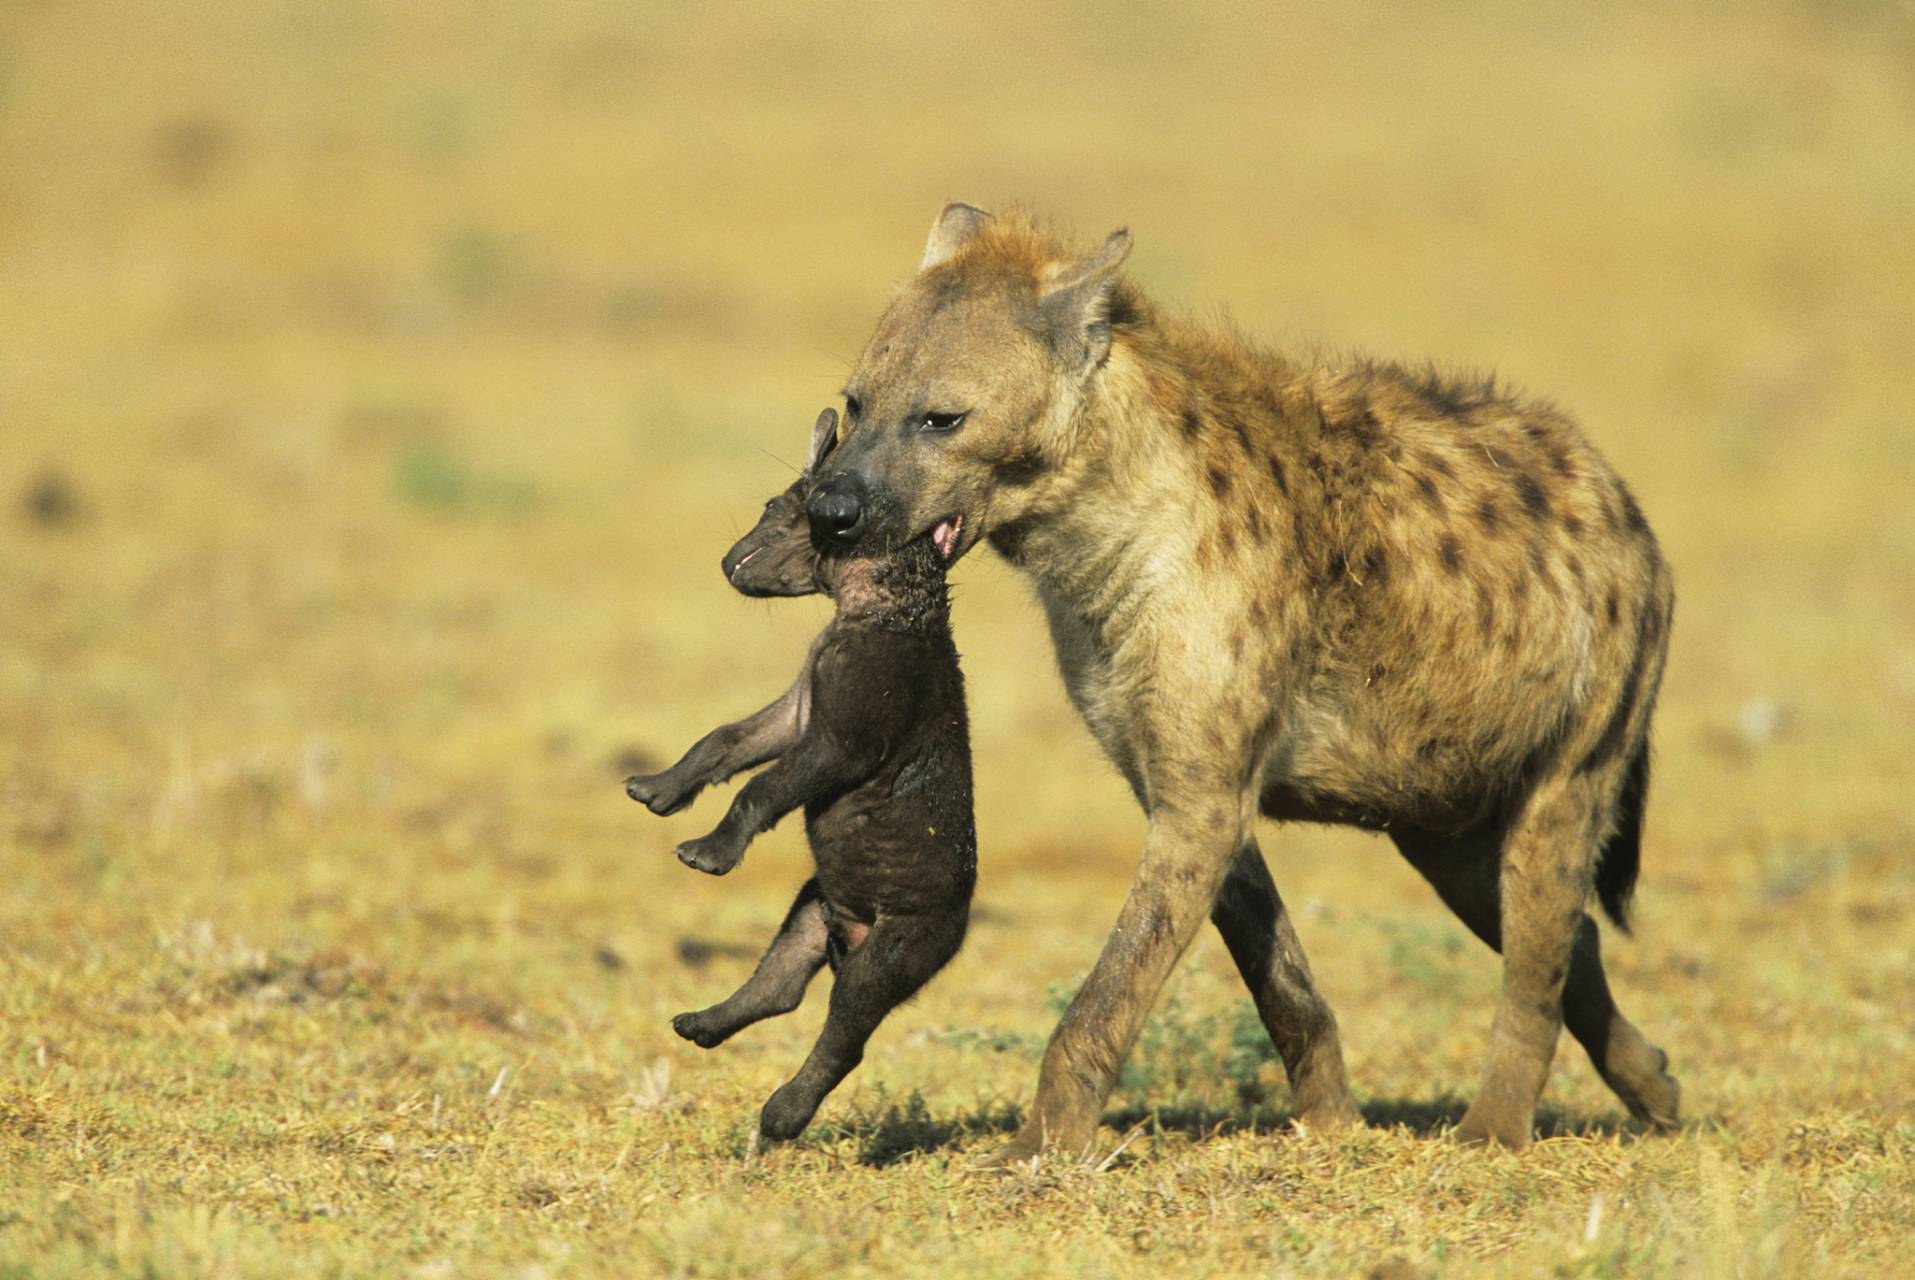 非洲二哥鬣狗,是非洲大草原上最成功的猎食动物之一,其群体狩猎和协作